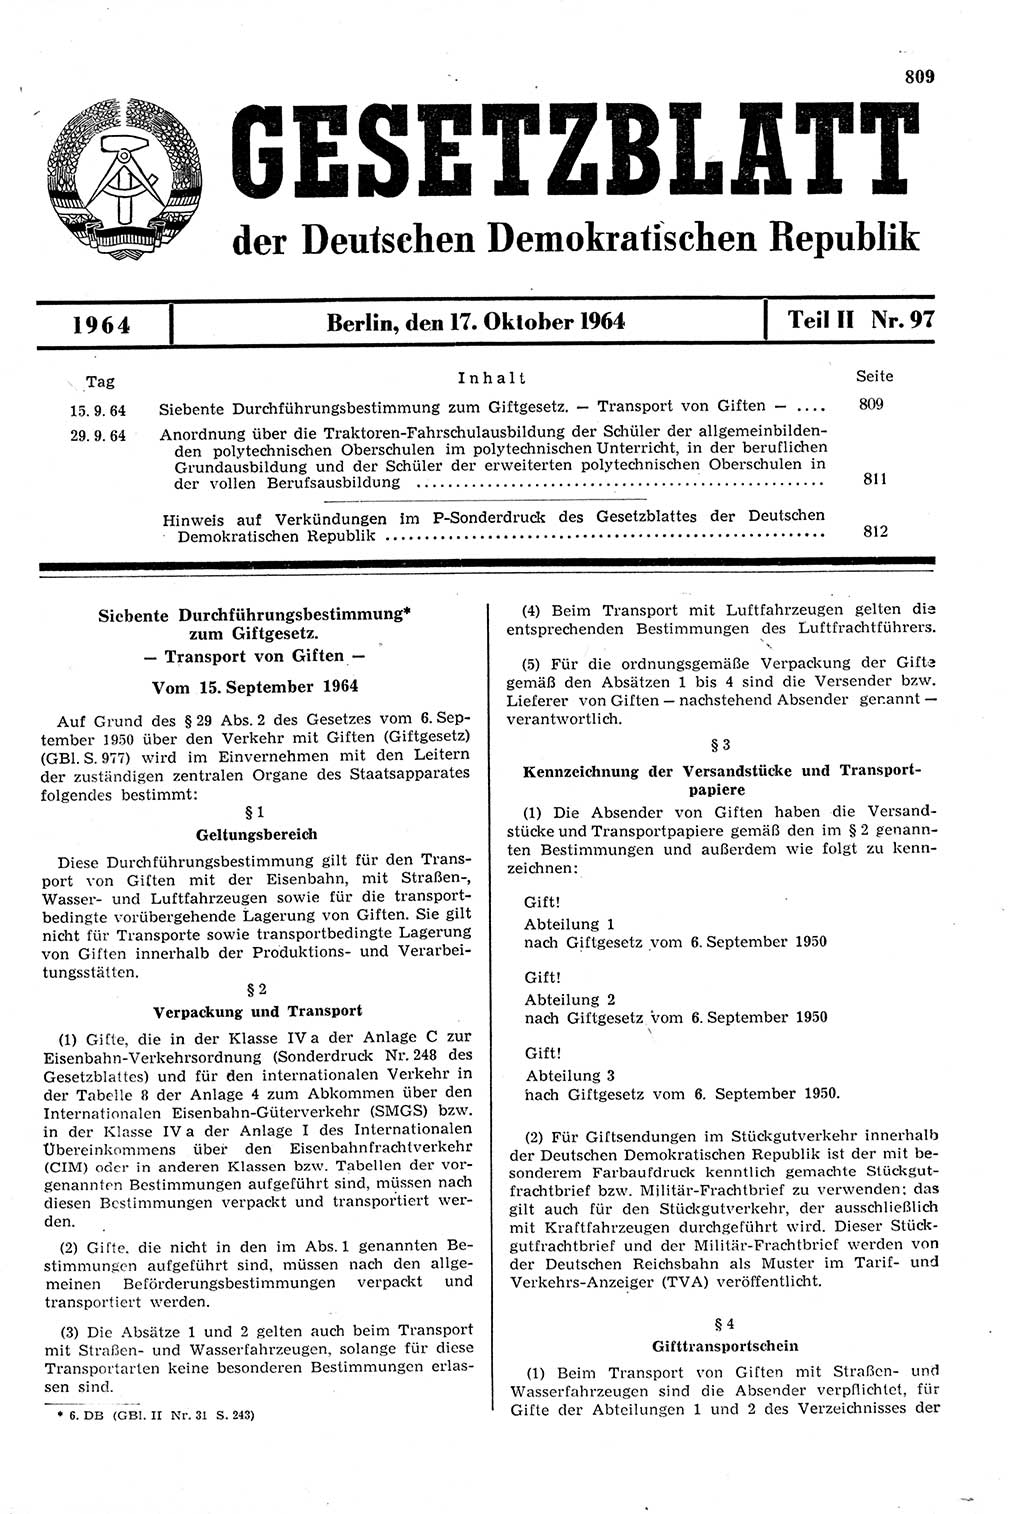 Gesetzblatt (GBl.) der Deutschen Demokratischen Republik (DDR) Teil ⅠⅠ 1964, Seite 809 (GBl. DDR ⅠⅠ 1964, S. 809)